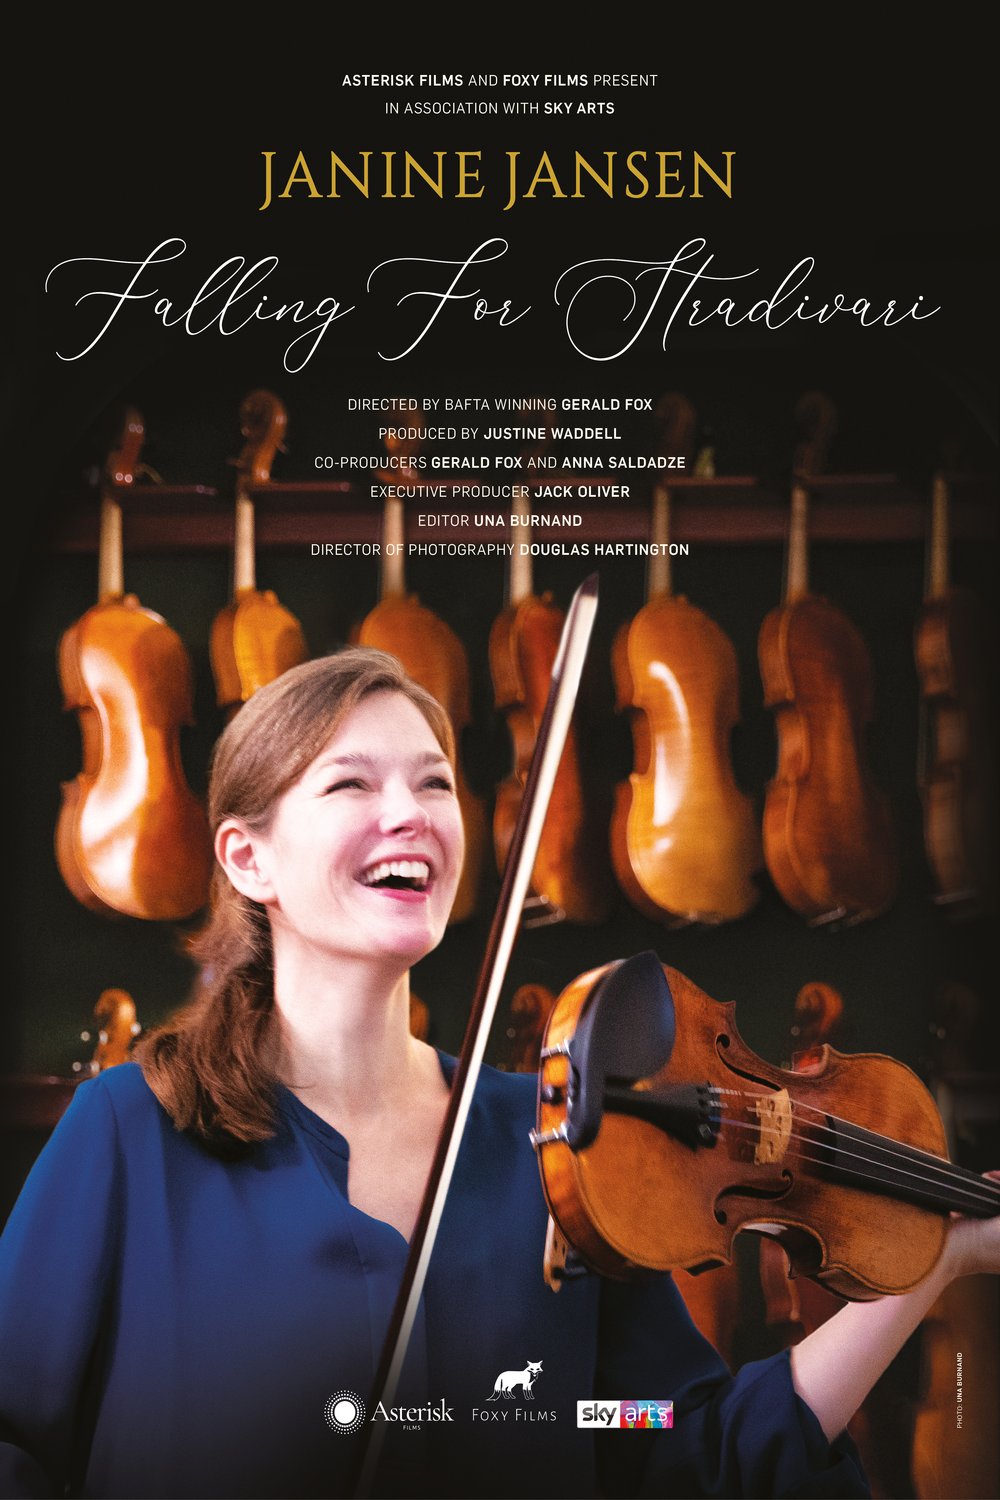 Poster of the movie Janine Jansen Falling for Stradivari